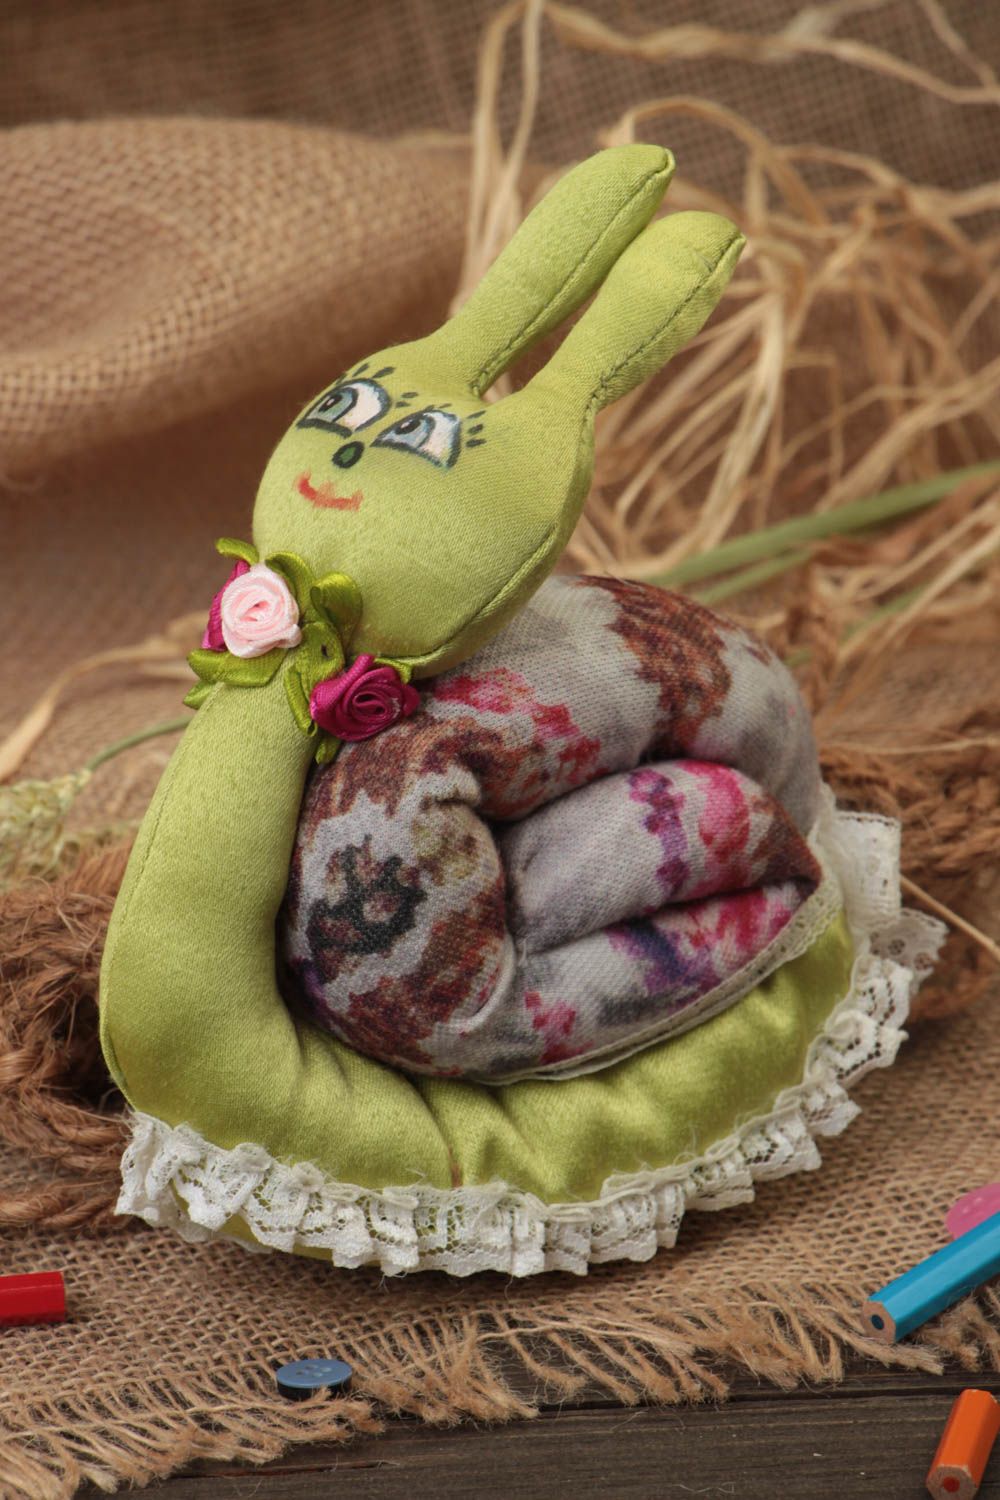 Textil Kuscheltier Schnecke aus Trikotage bunt handmade Spielzeug für Kinder foto 1